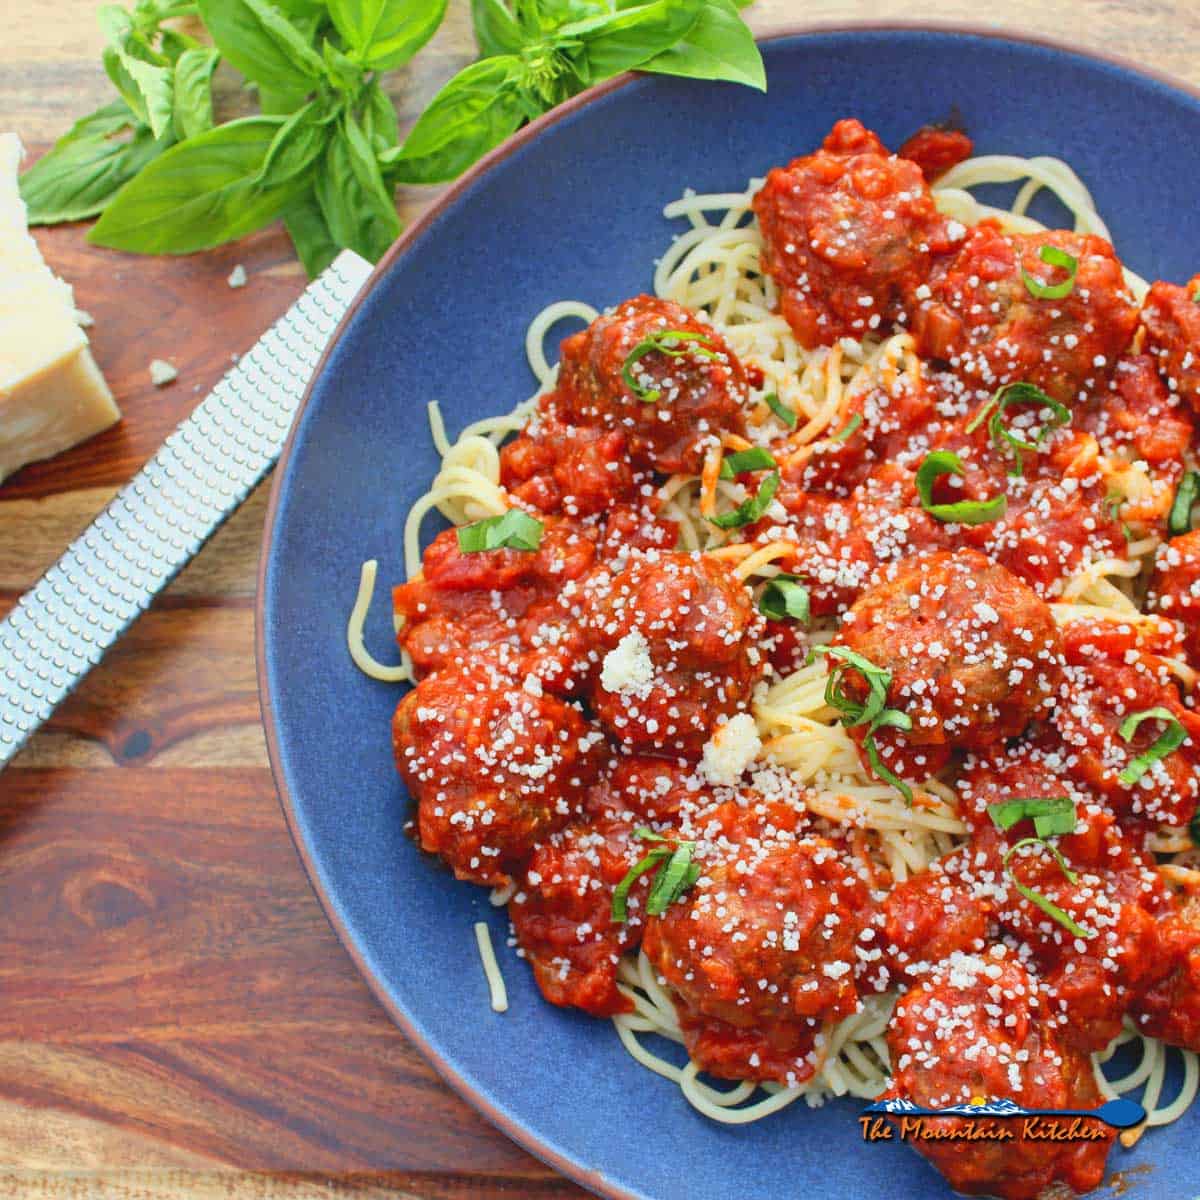 Easy Italian Meatballs | The Mountain Kitchen